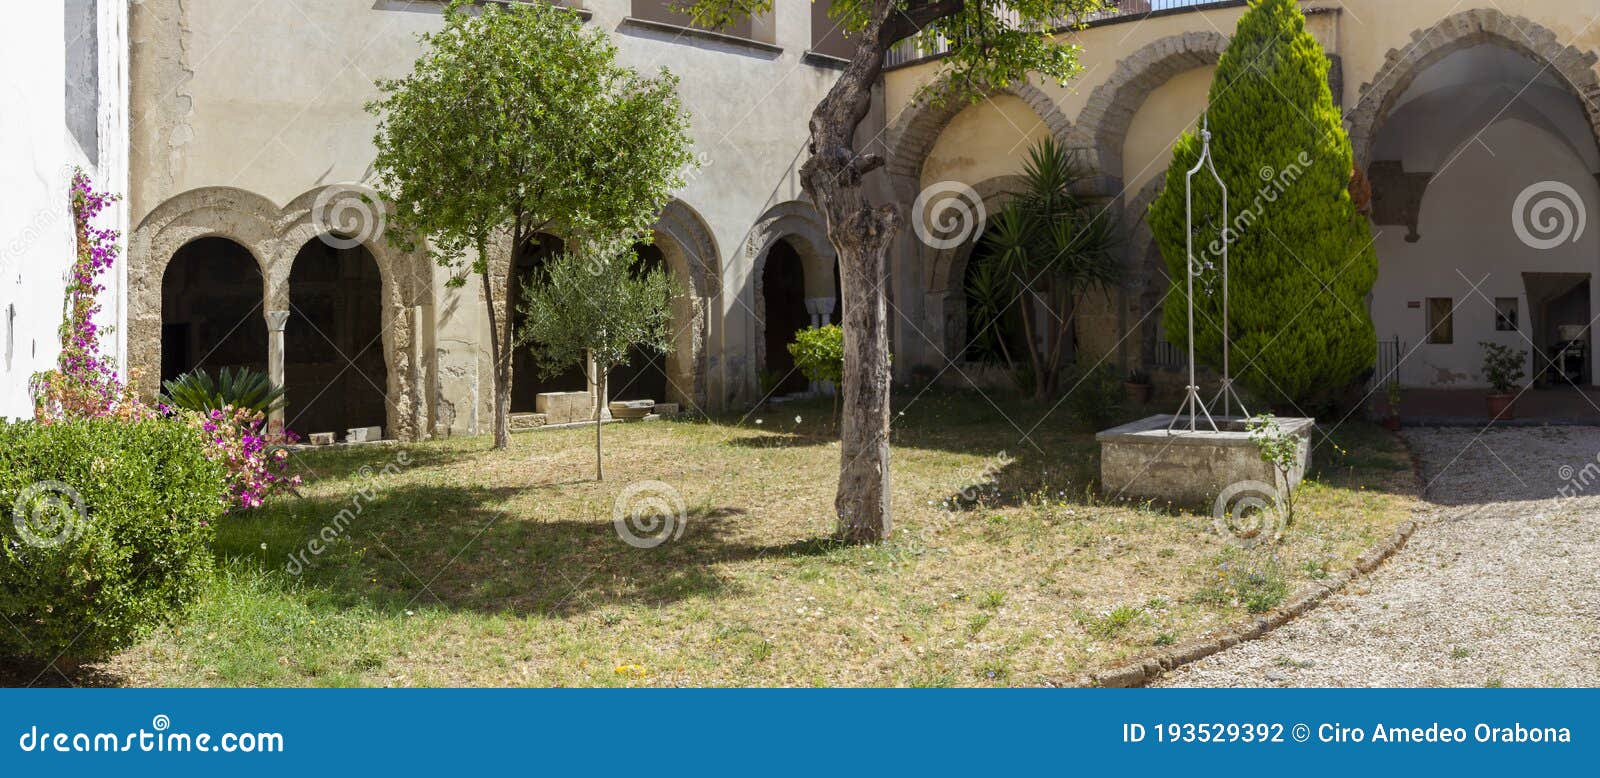 cloister of san francesco in aversa